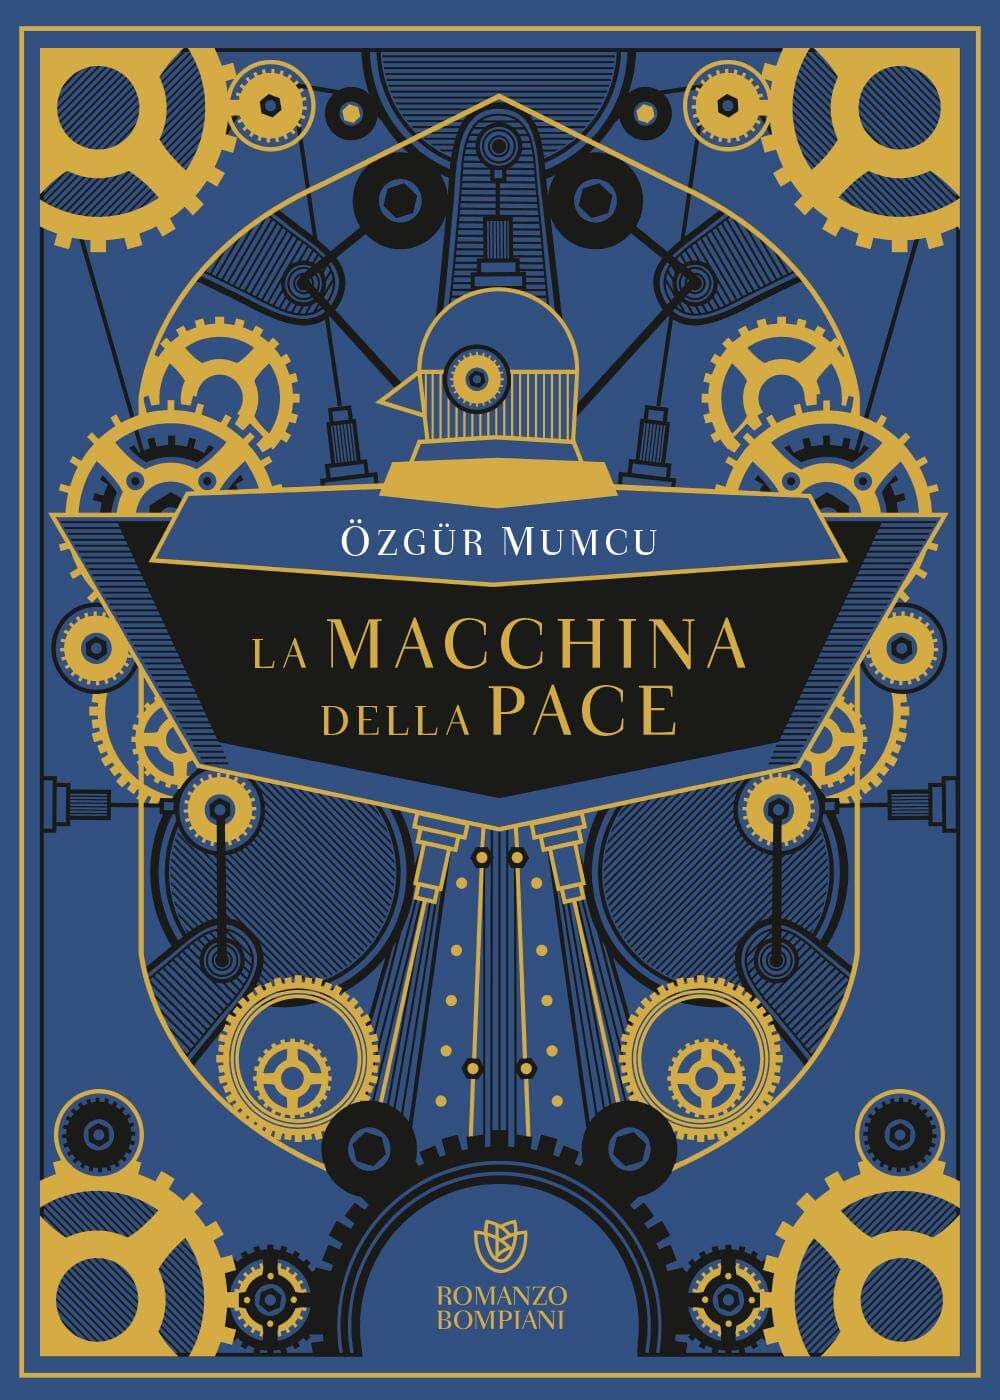 La macchina della pace - Özgür Mumcu - Marzo 2020